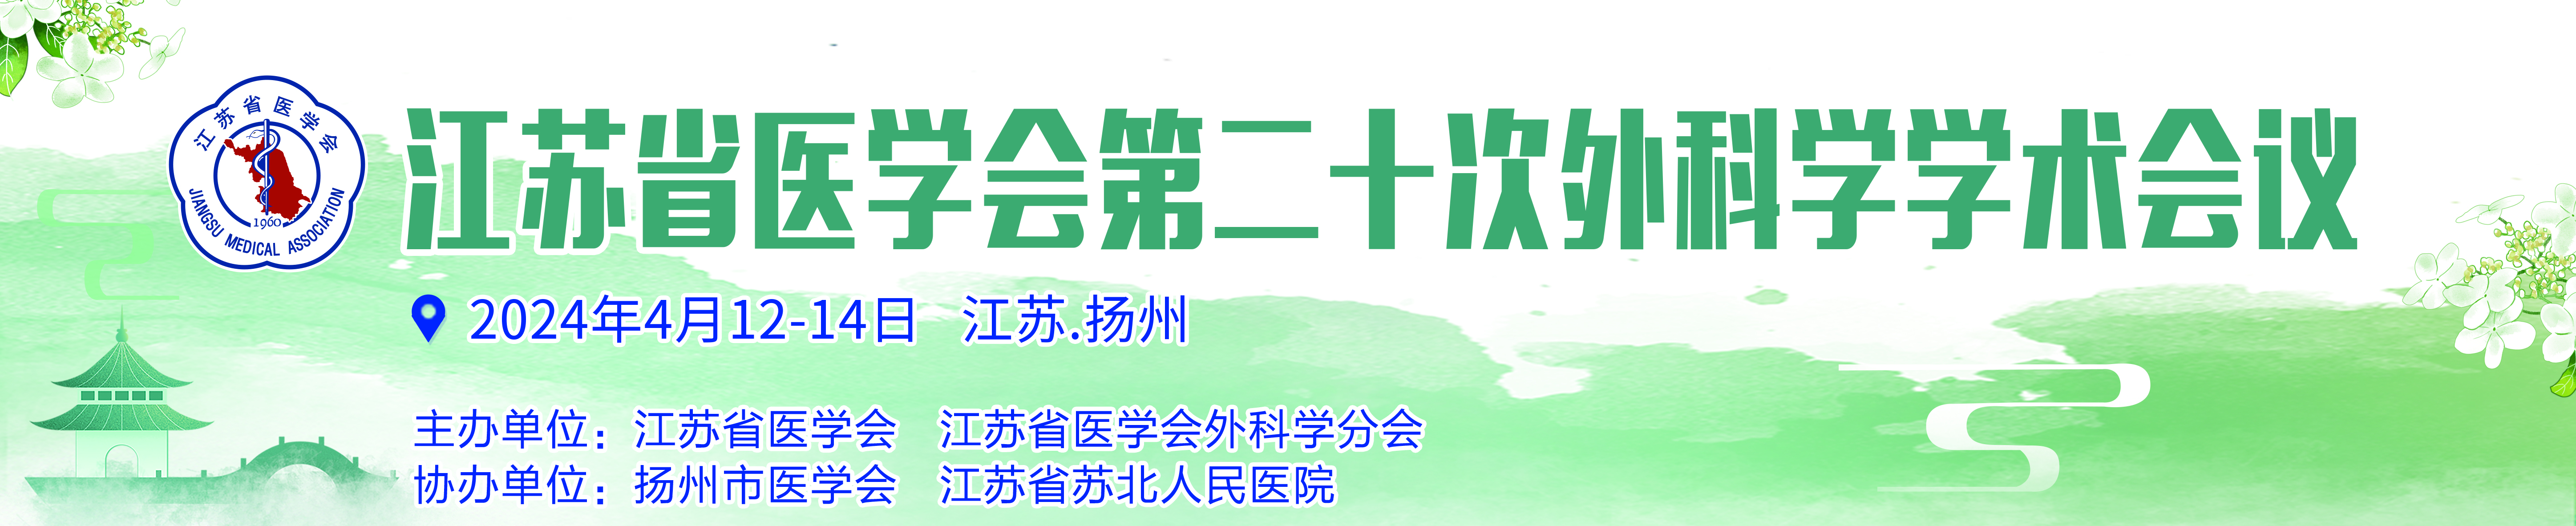 江苏省医学会第二十次外科学学术会议